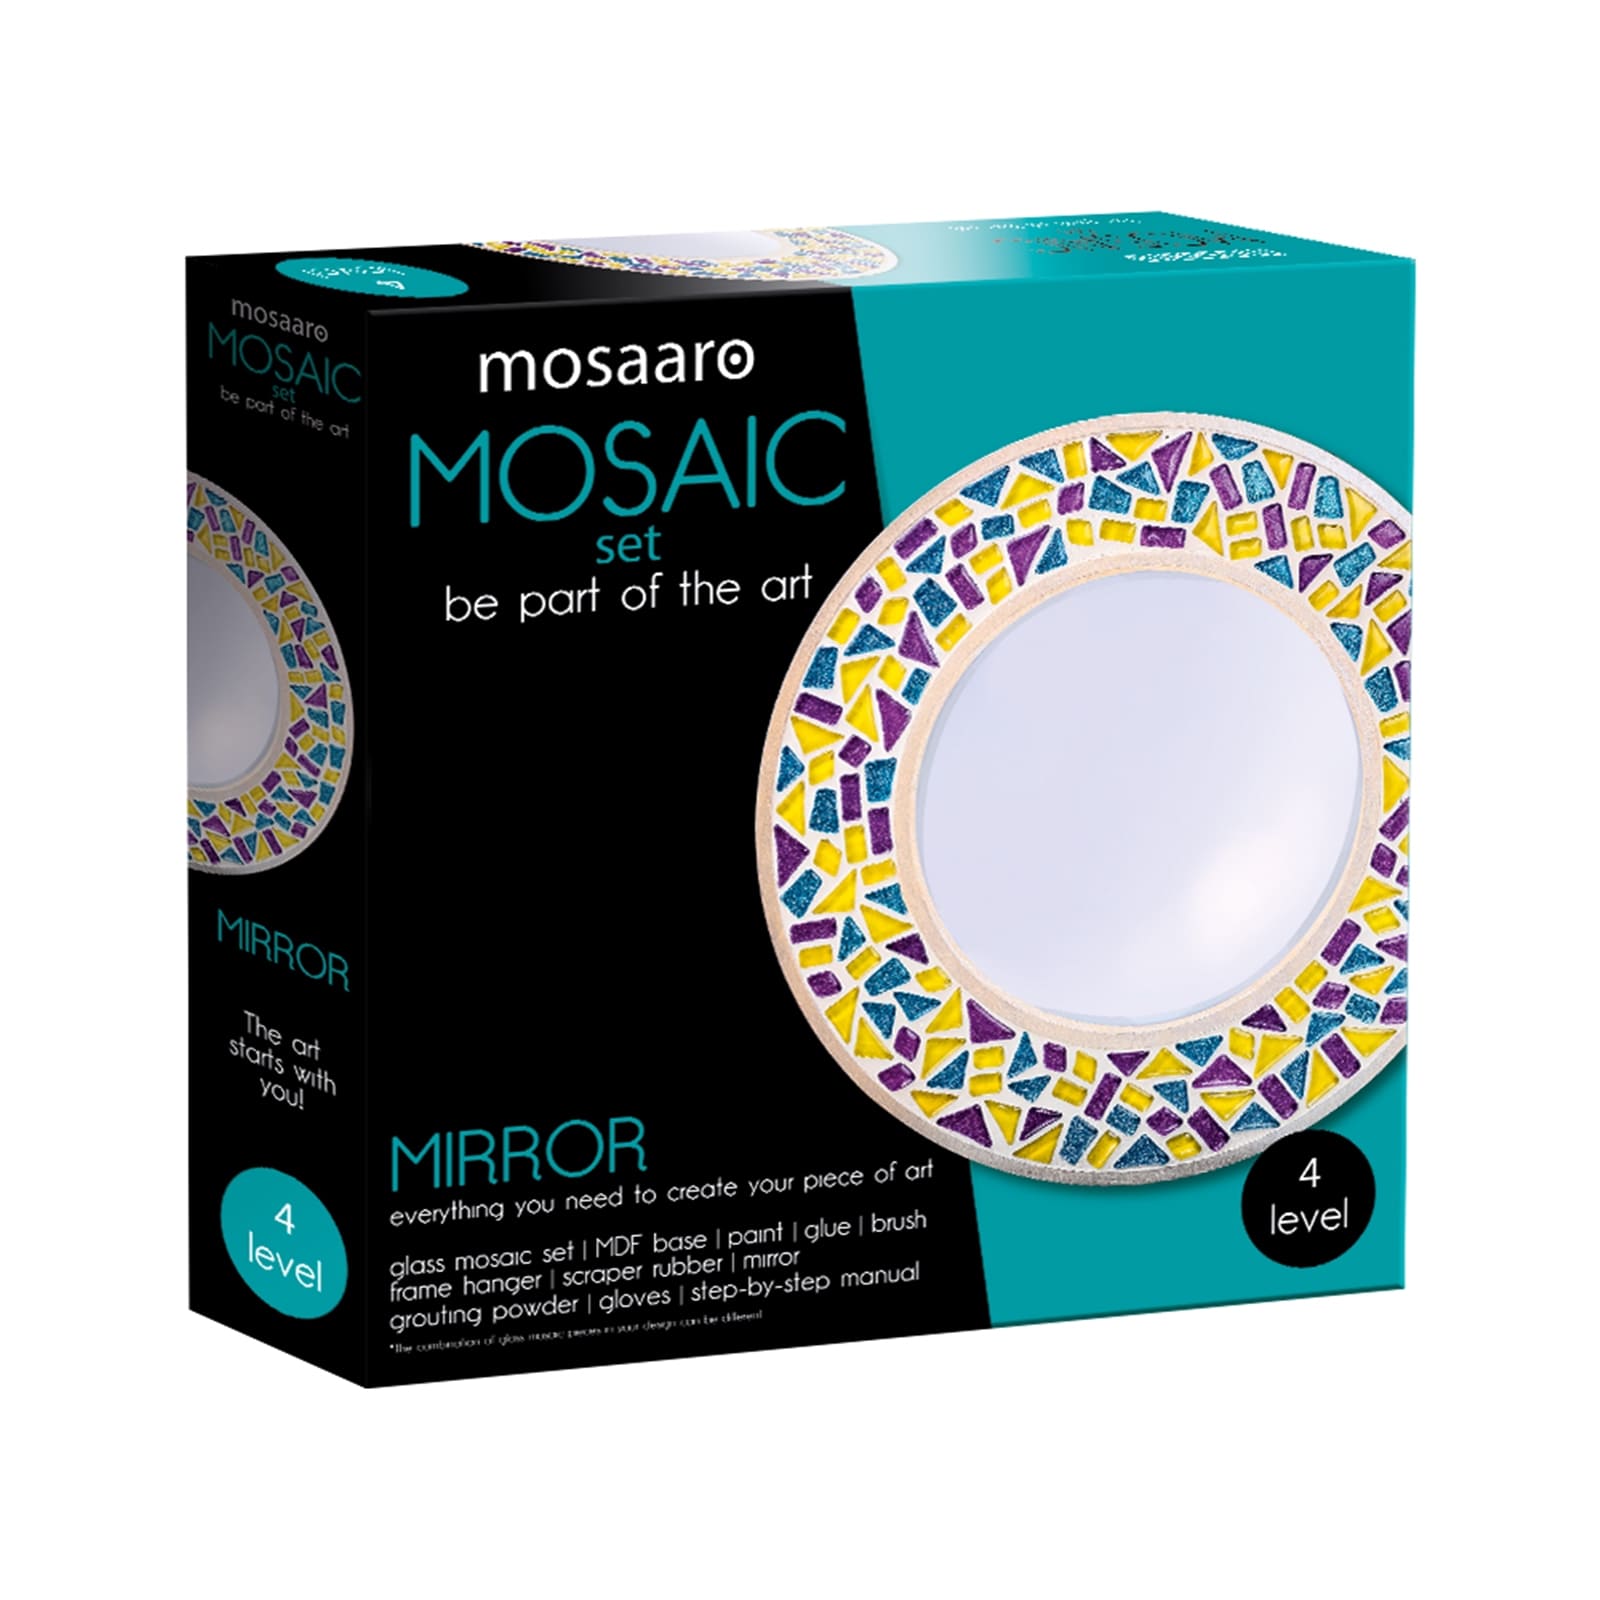 MOSAARO Mosaikset Spiegel Level 4